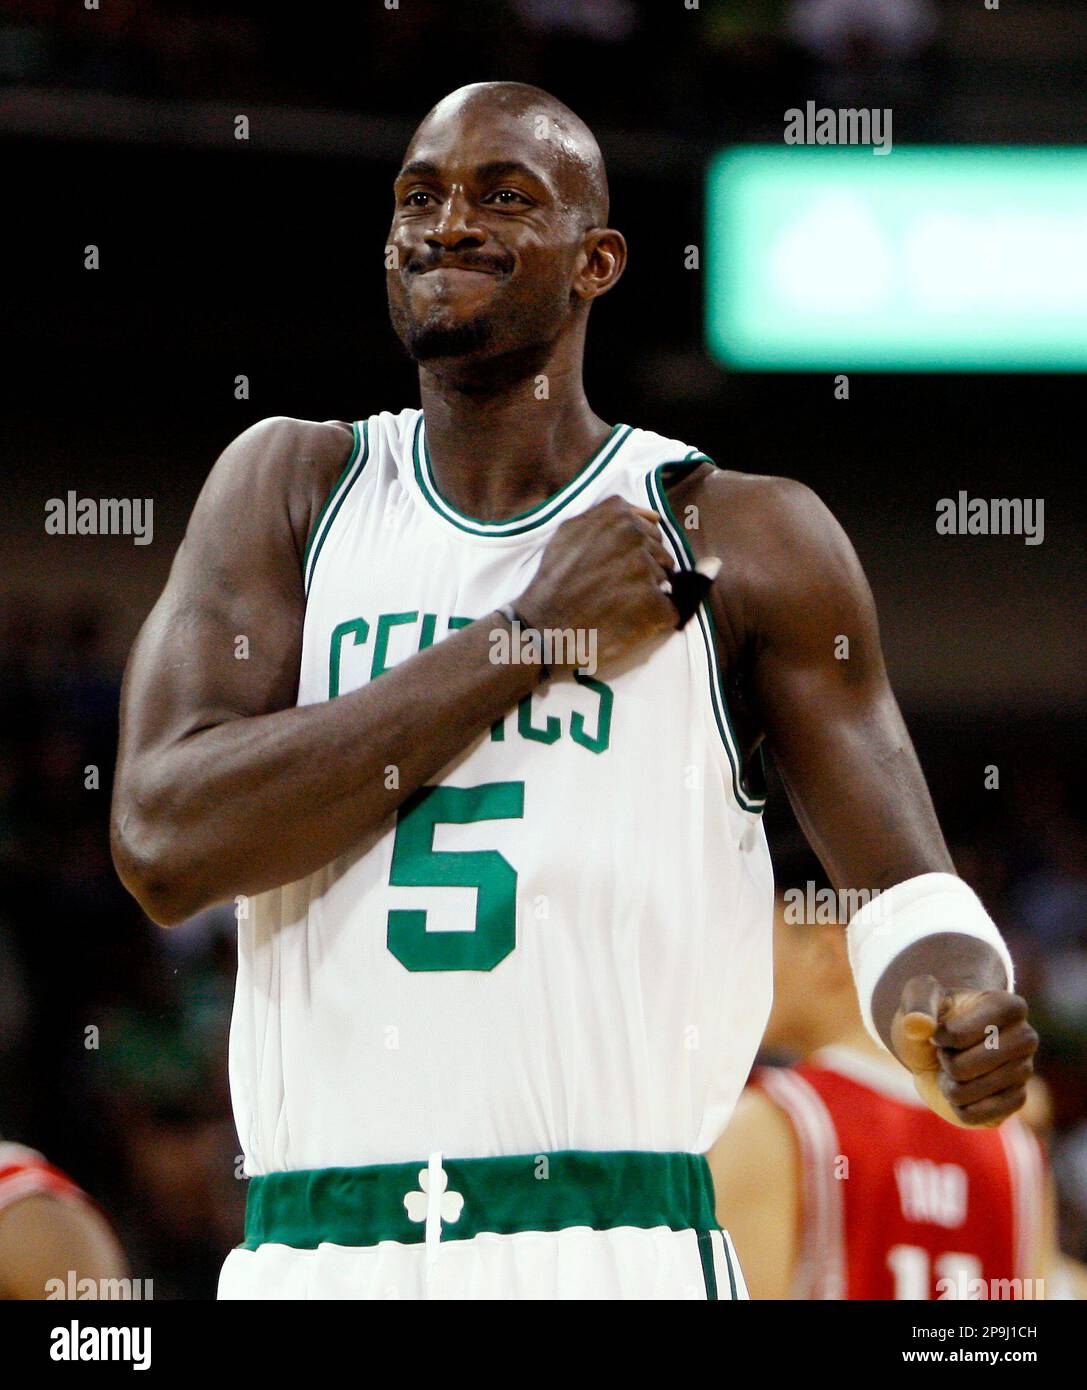 Boston Celtics - Kevin Garnett Wallpaper Download